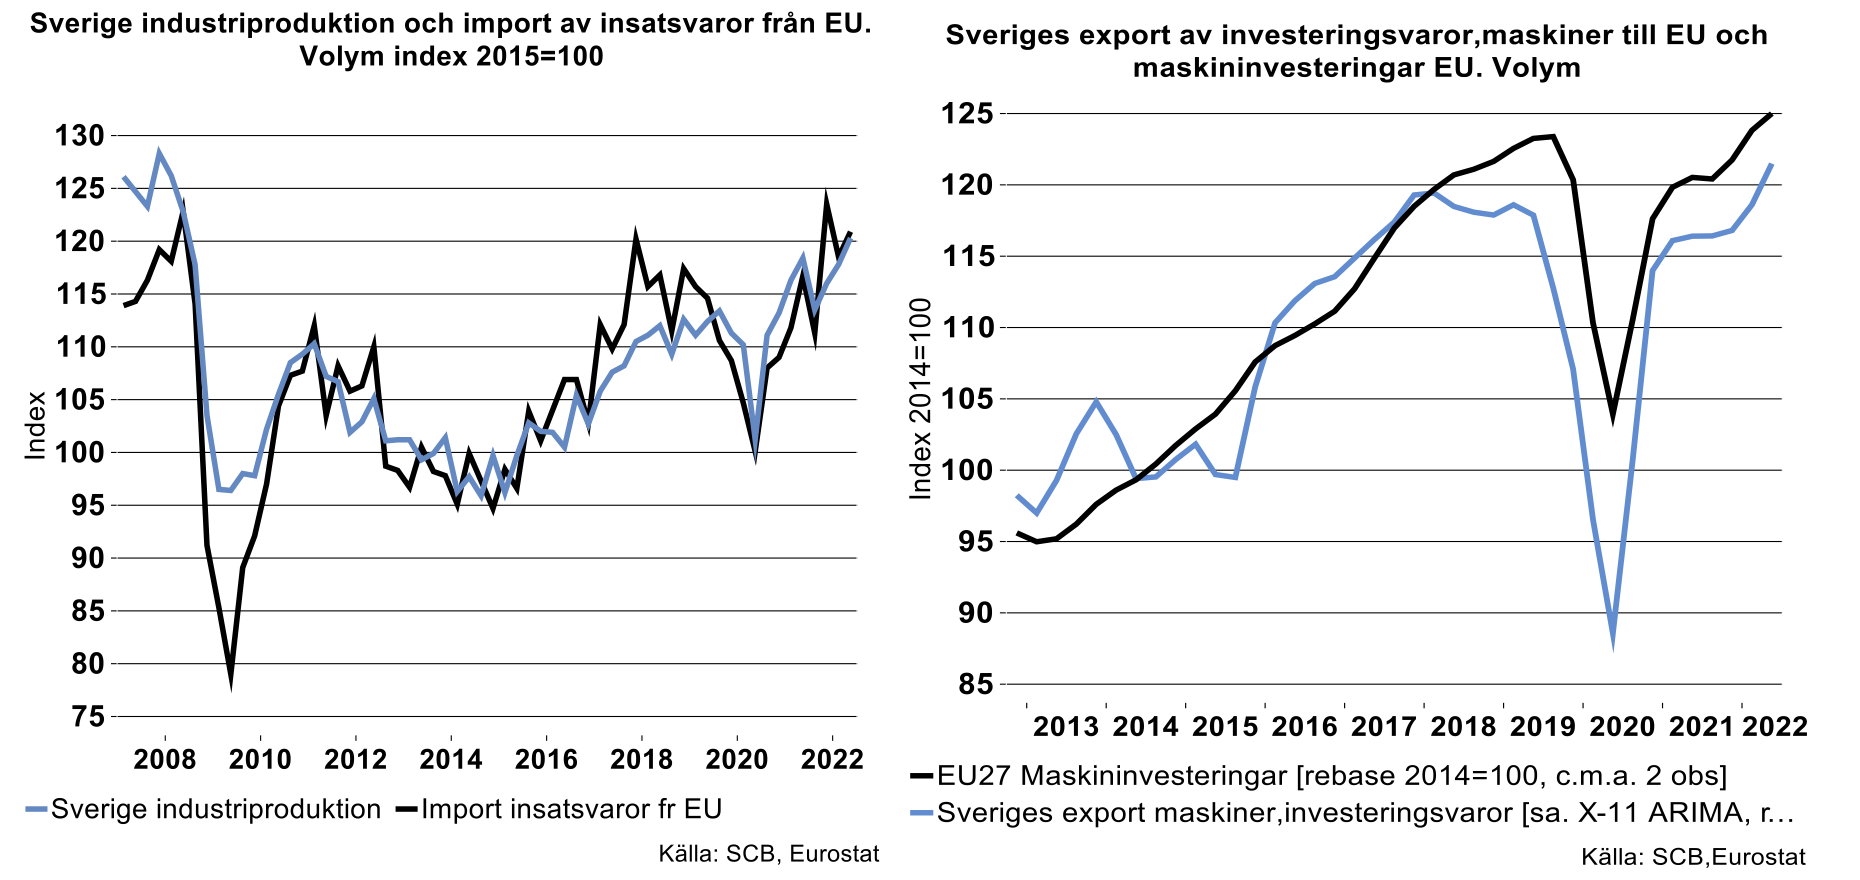 Sverige-industriproduktion-och-import-av-insatsvaror-fran-EU.png